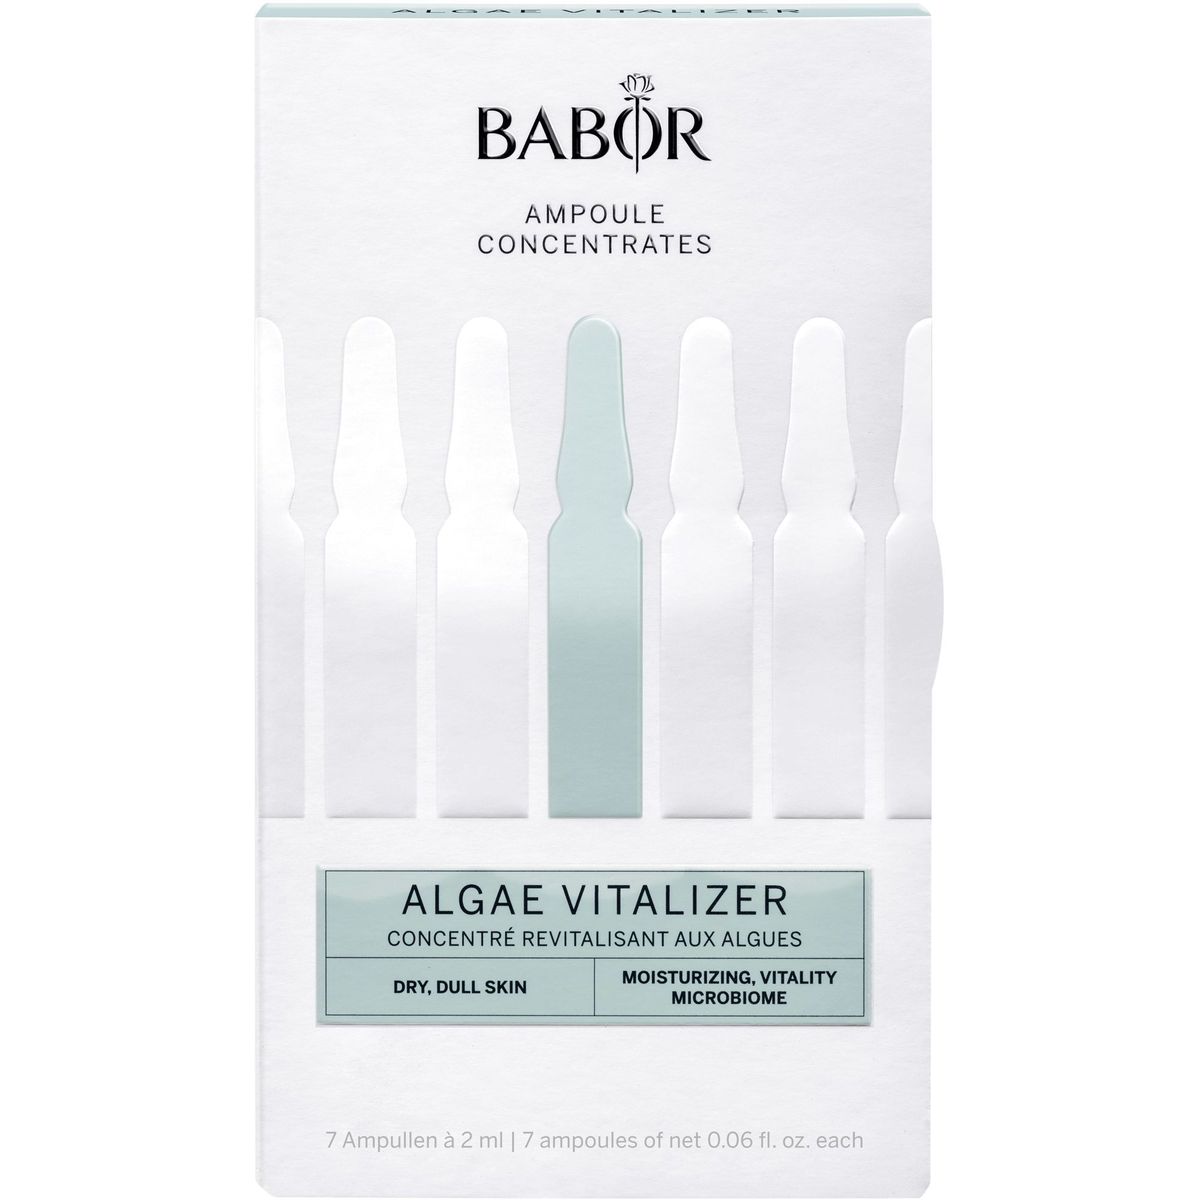 Ампулы для лица Babor Algae Vitalizer 14 мл (7 шт. x 2 мл) - фото 1